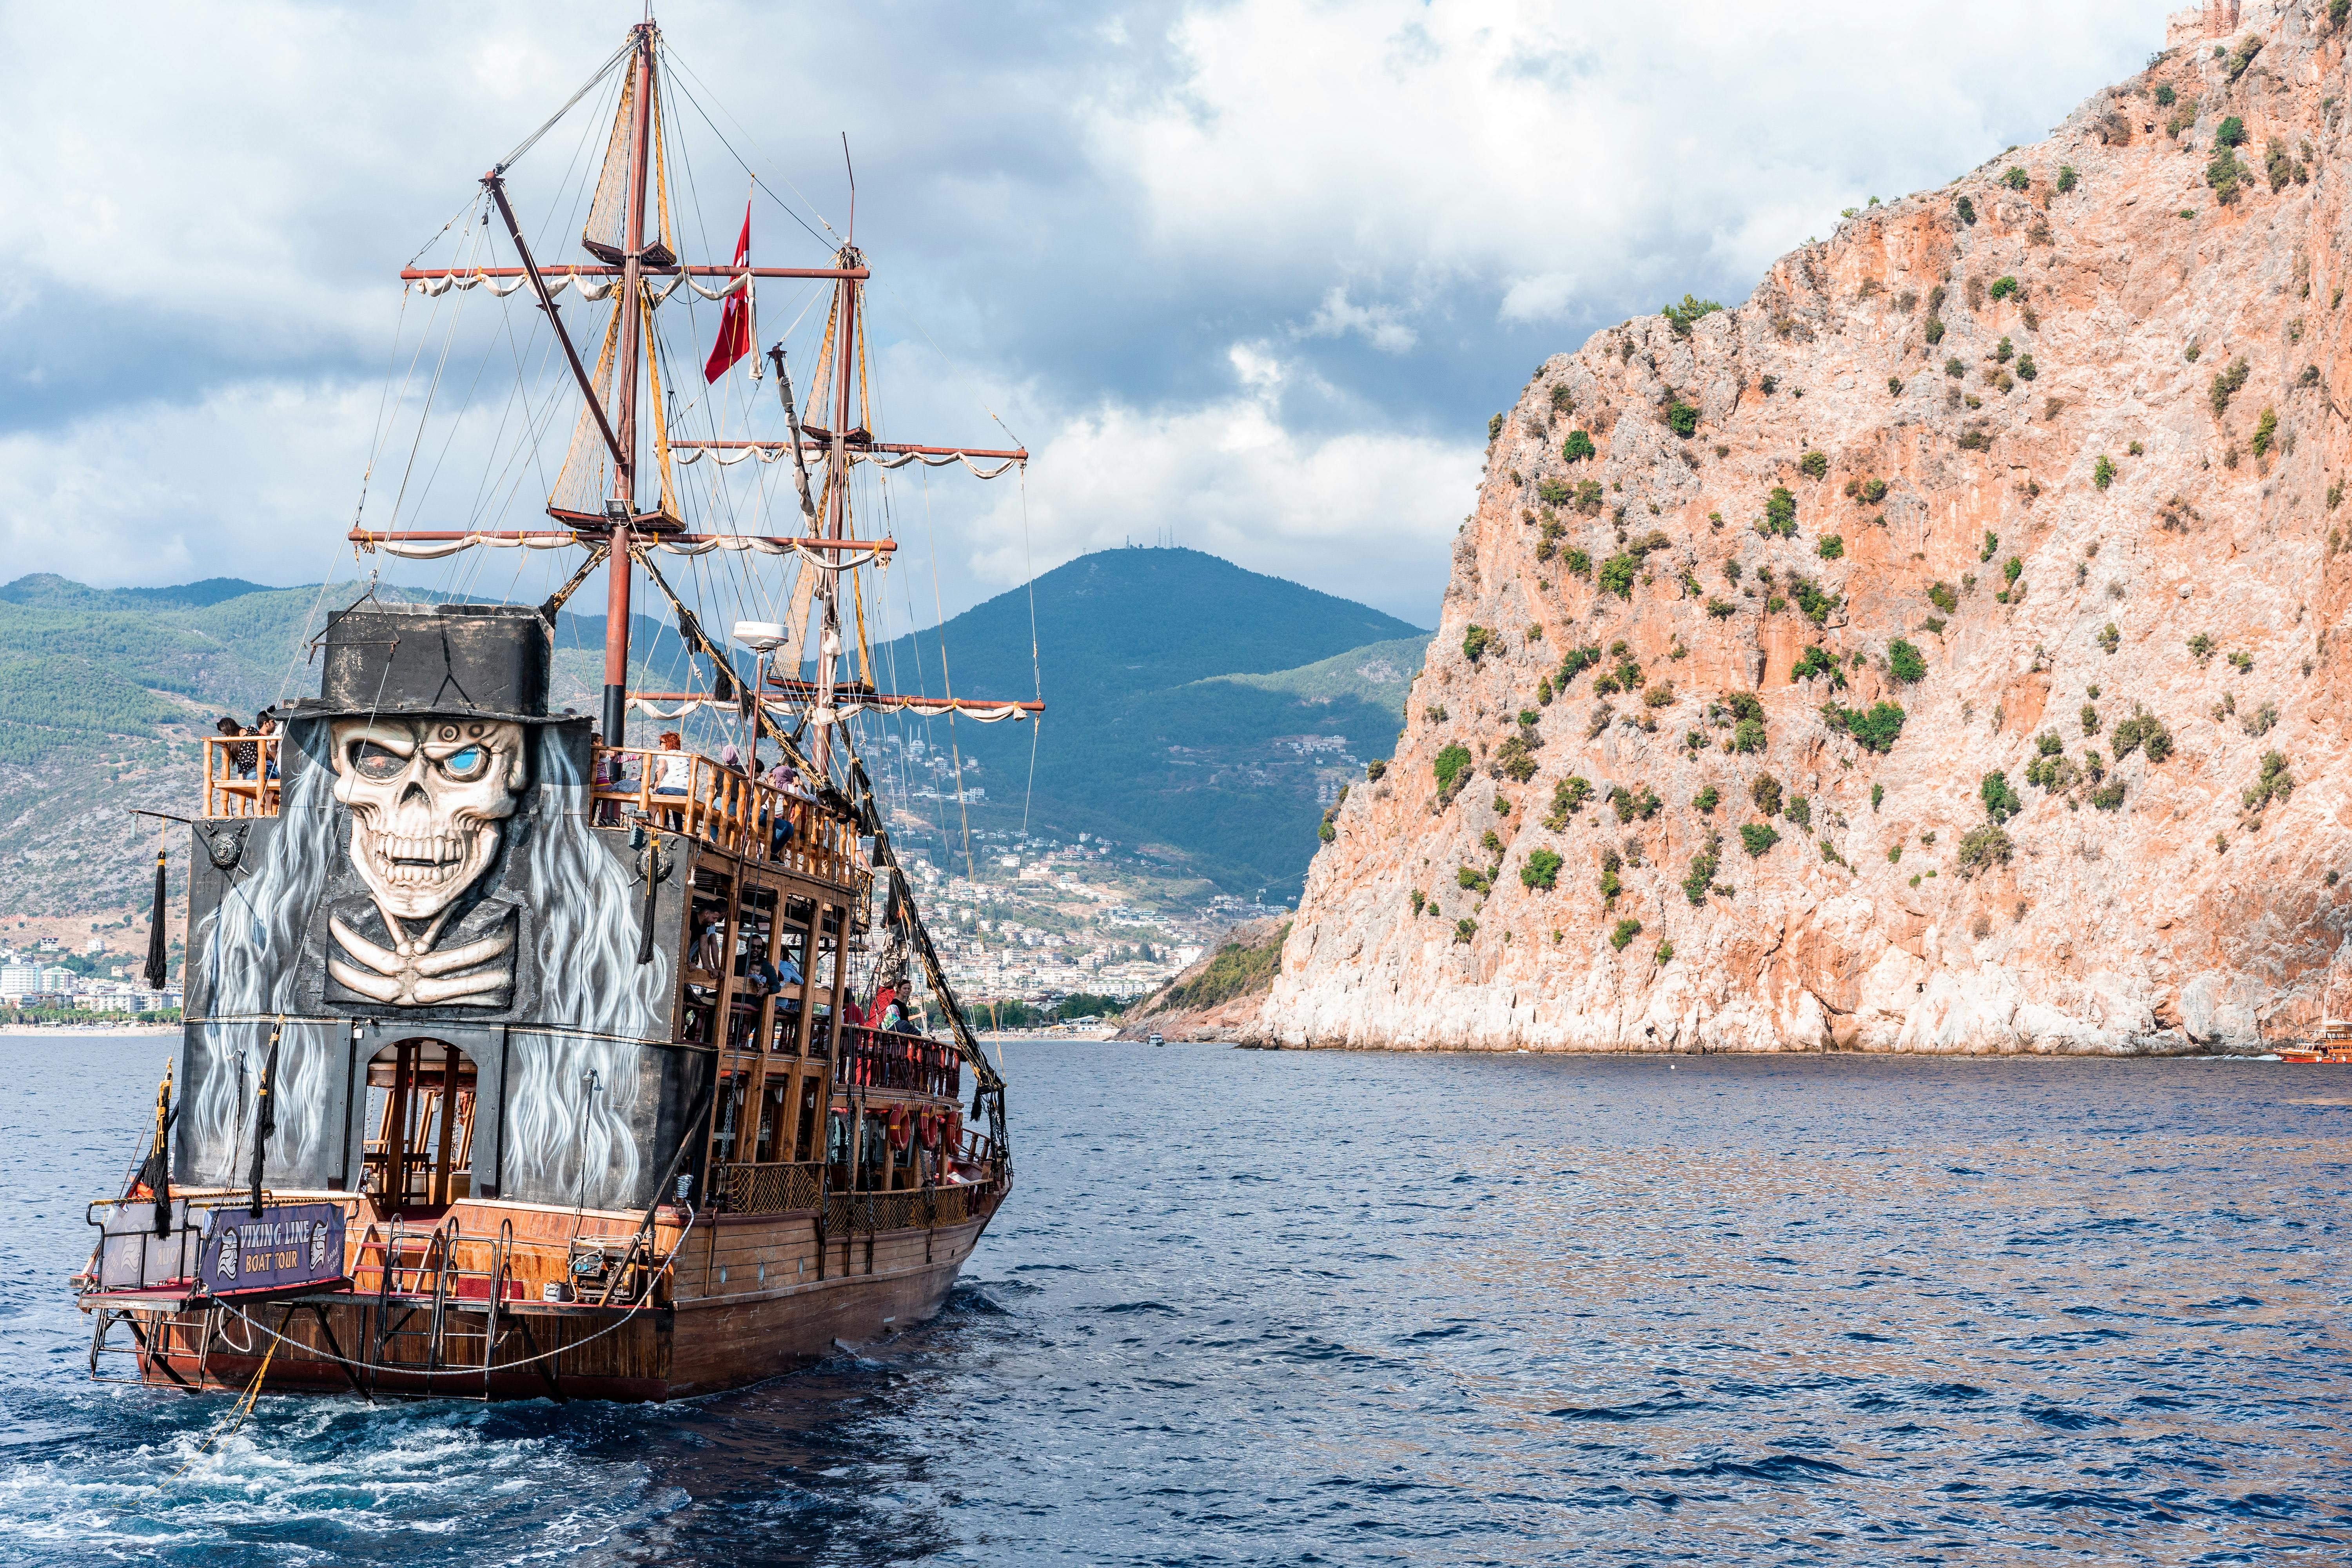 a pirate ship sailing on sea